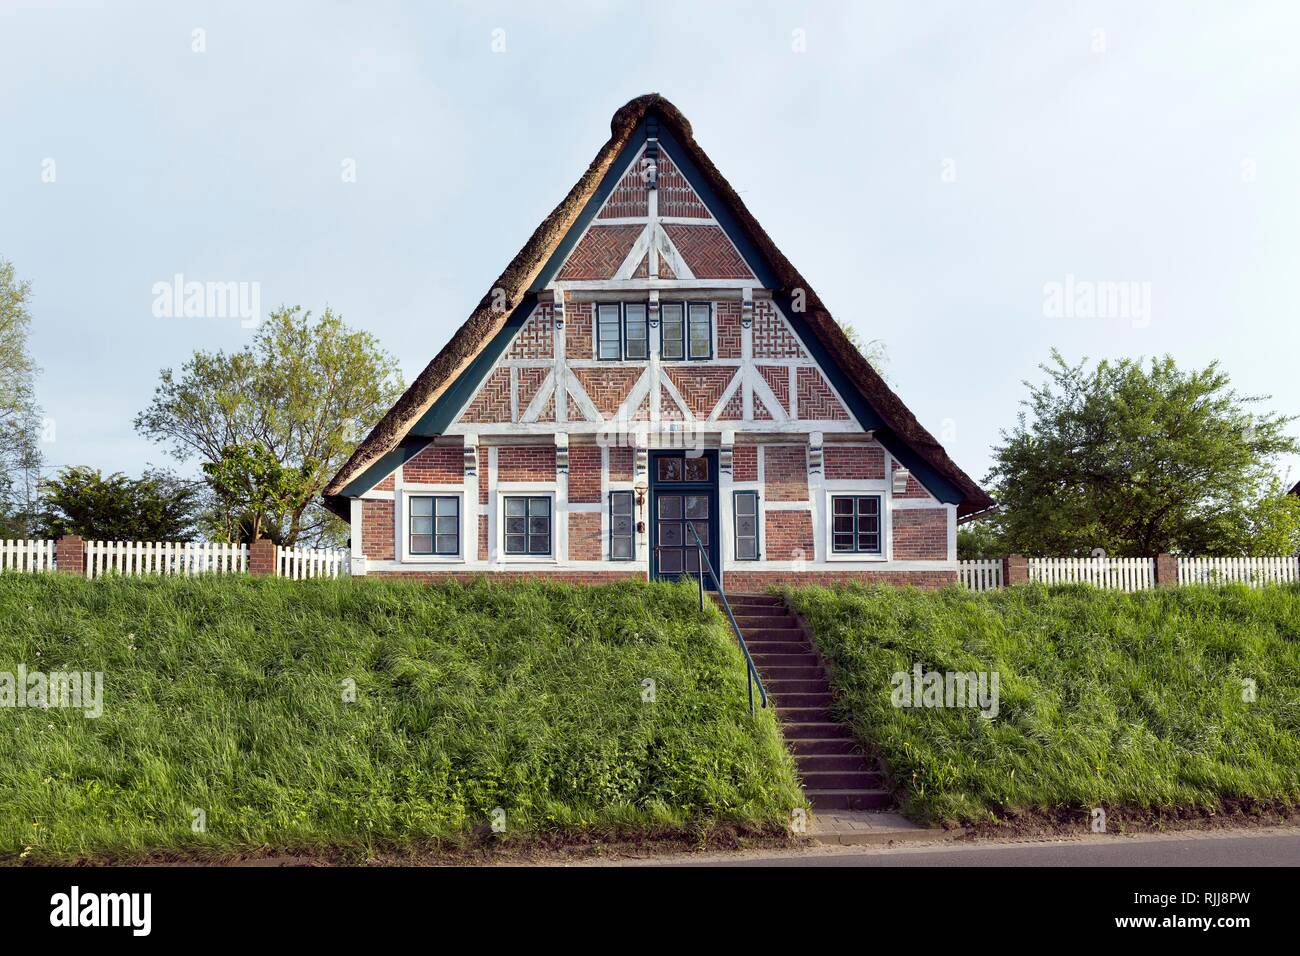 Altländer Bauernhaus, Fachwerkhaus mit Reetdach, Mittelkirchen, Lühe, Altes Land, Niedersachsen, Deutschland Stockfoto